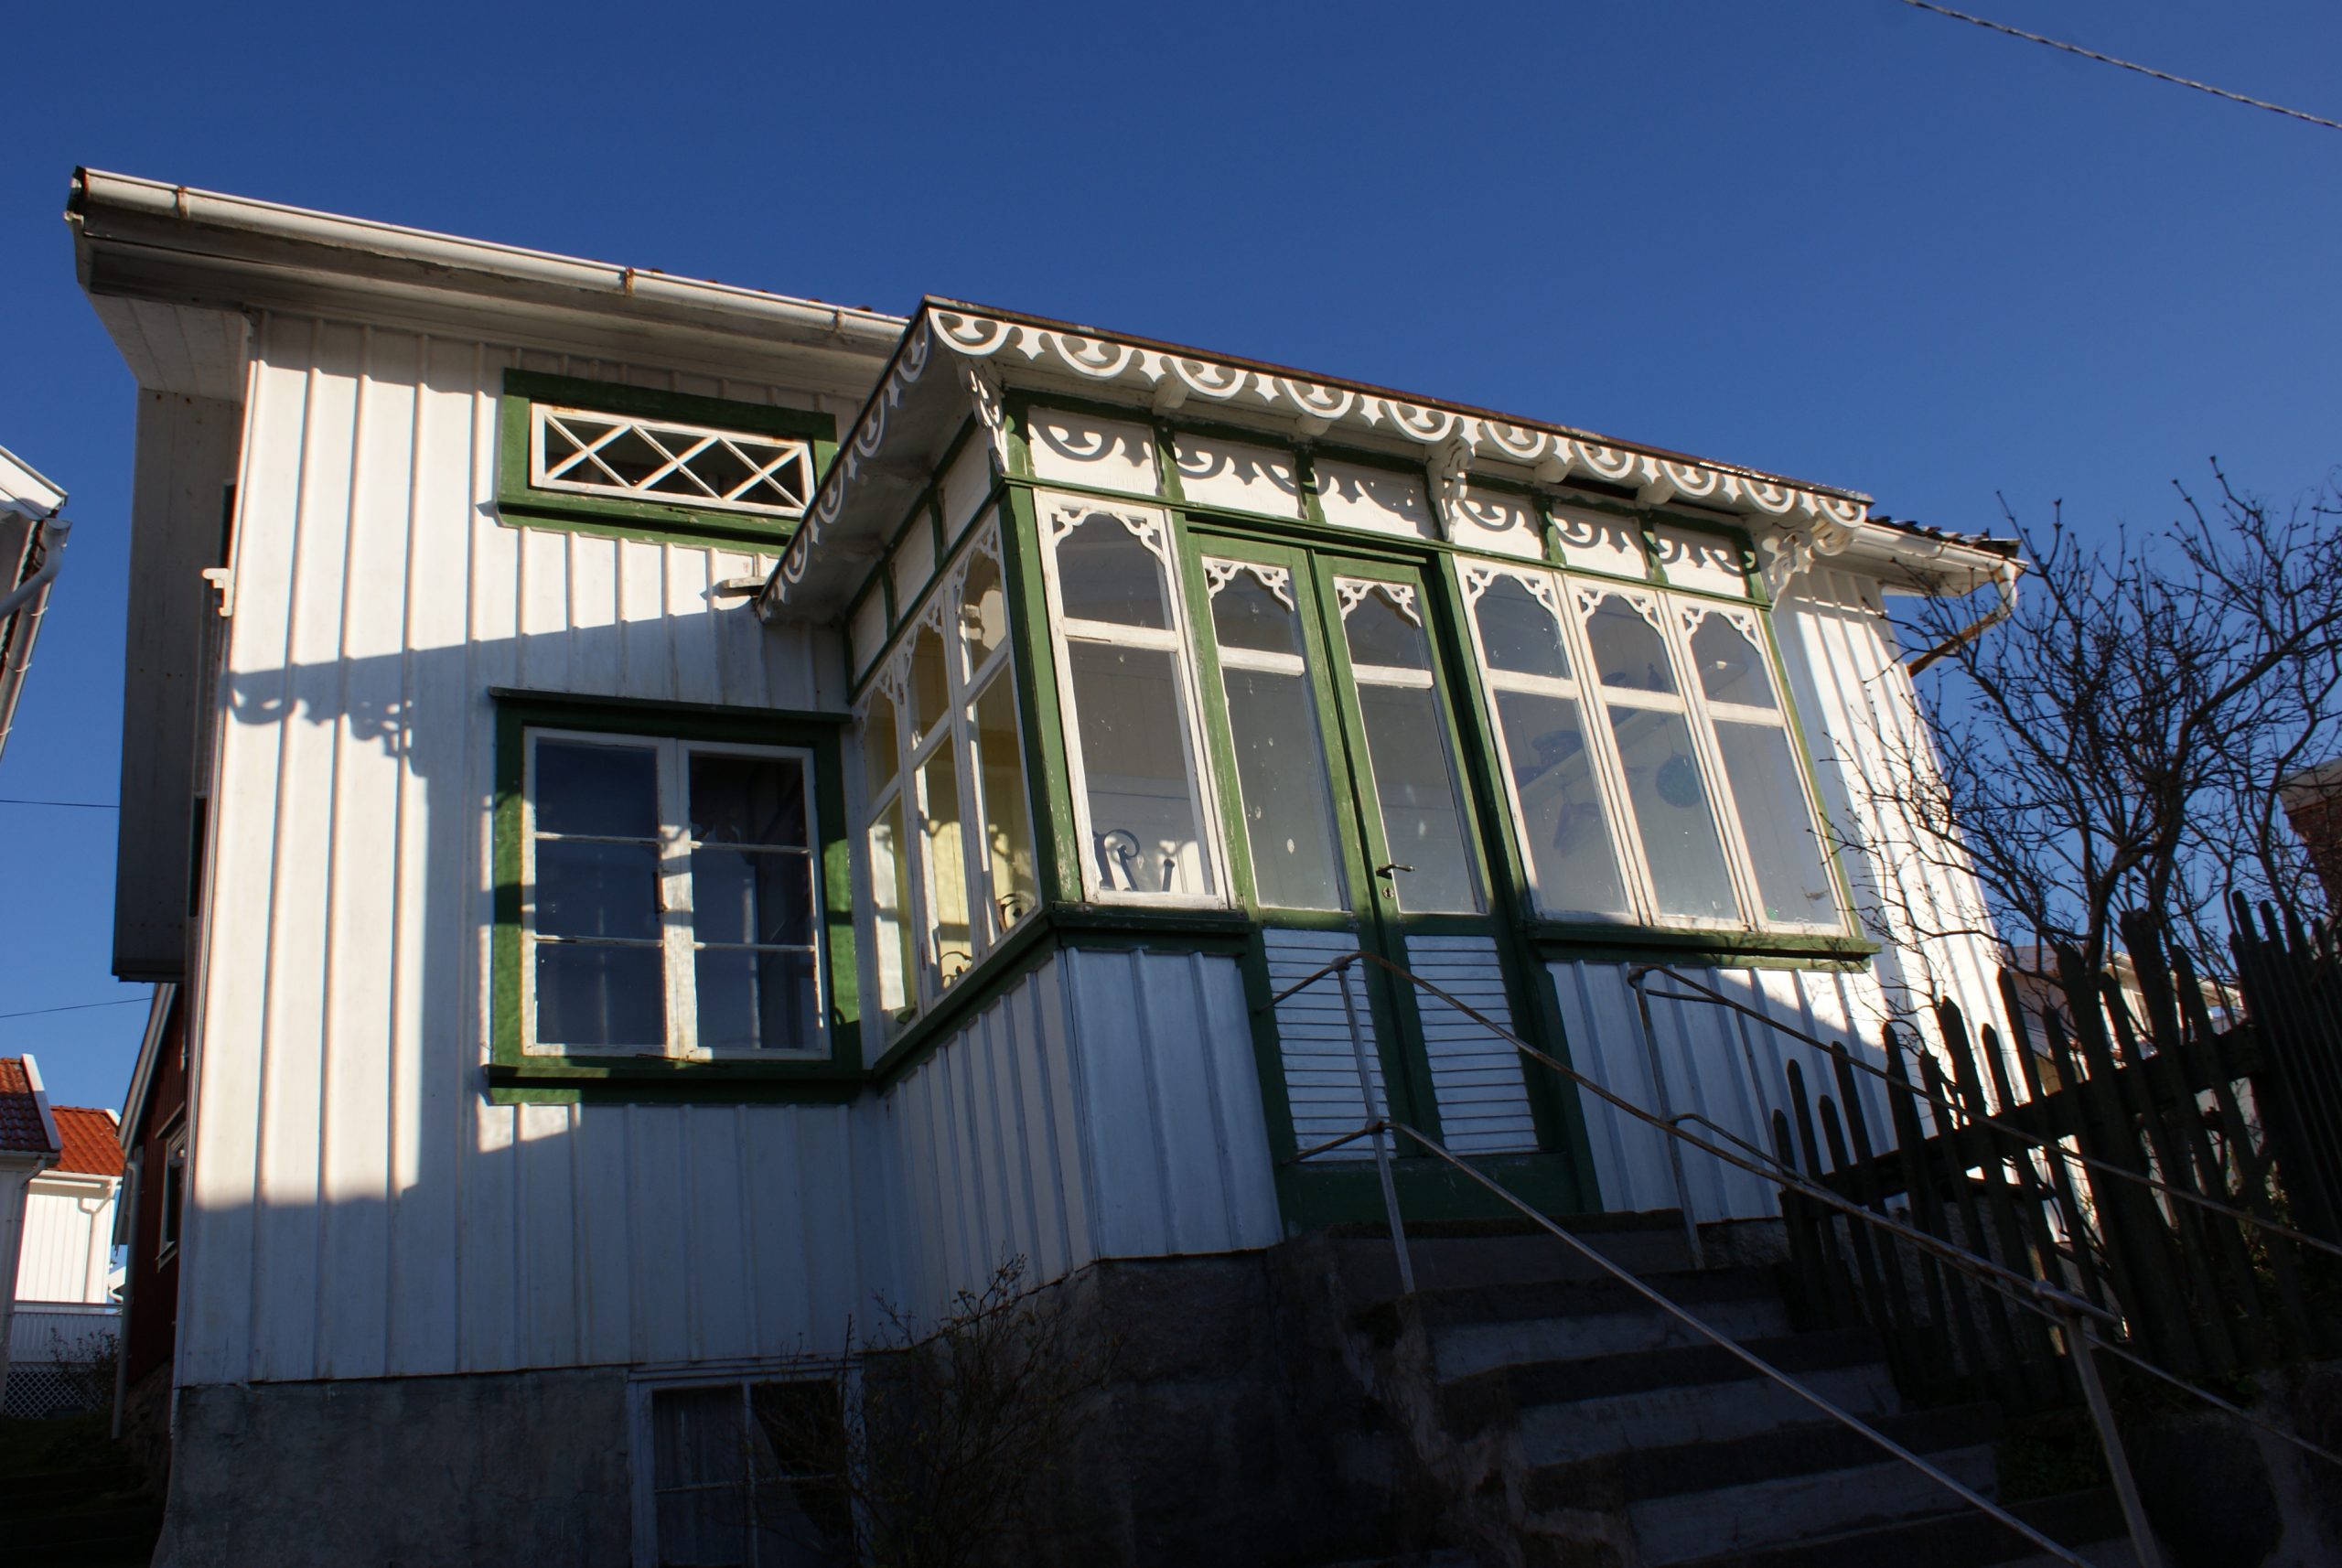 Foto. Ljusmålat bostadhus med utbyggd veranda. Gröna foder och vita snickeridetaljer.